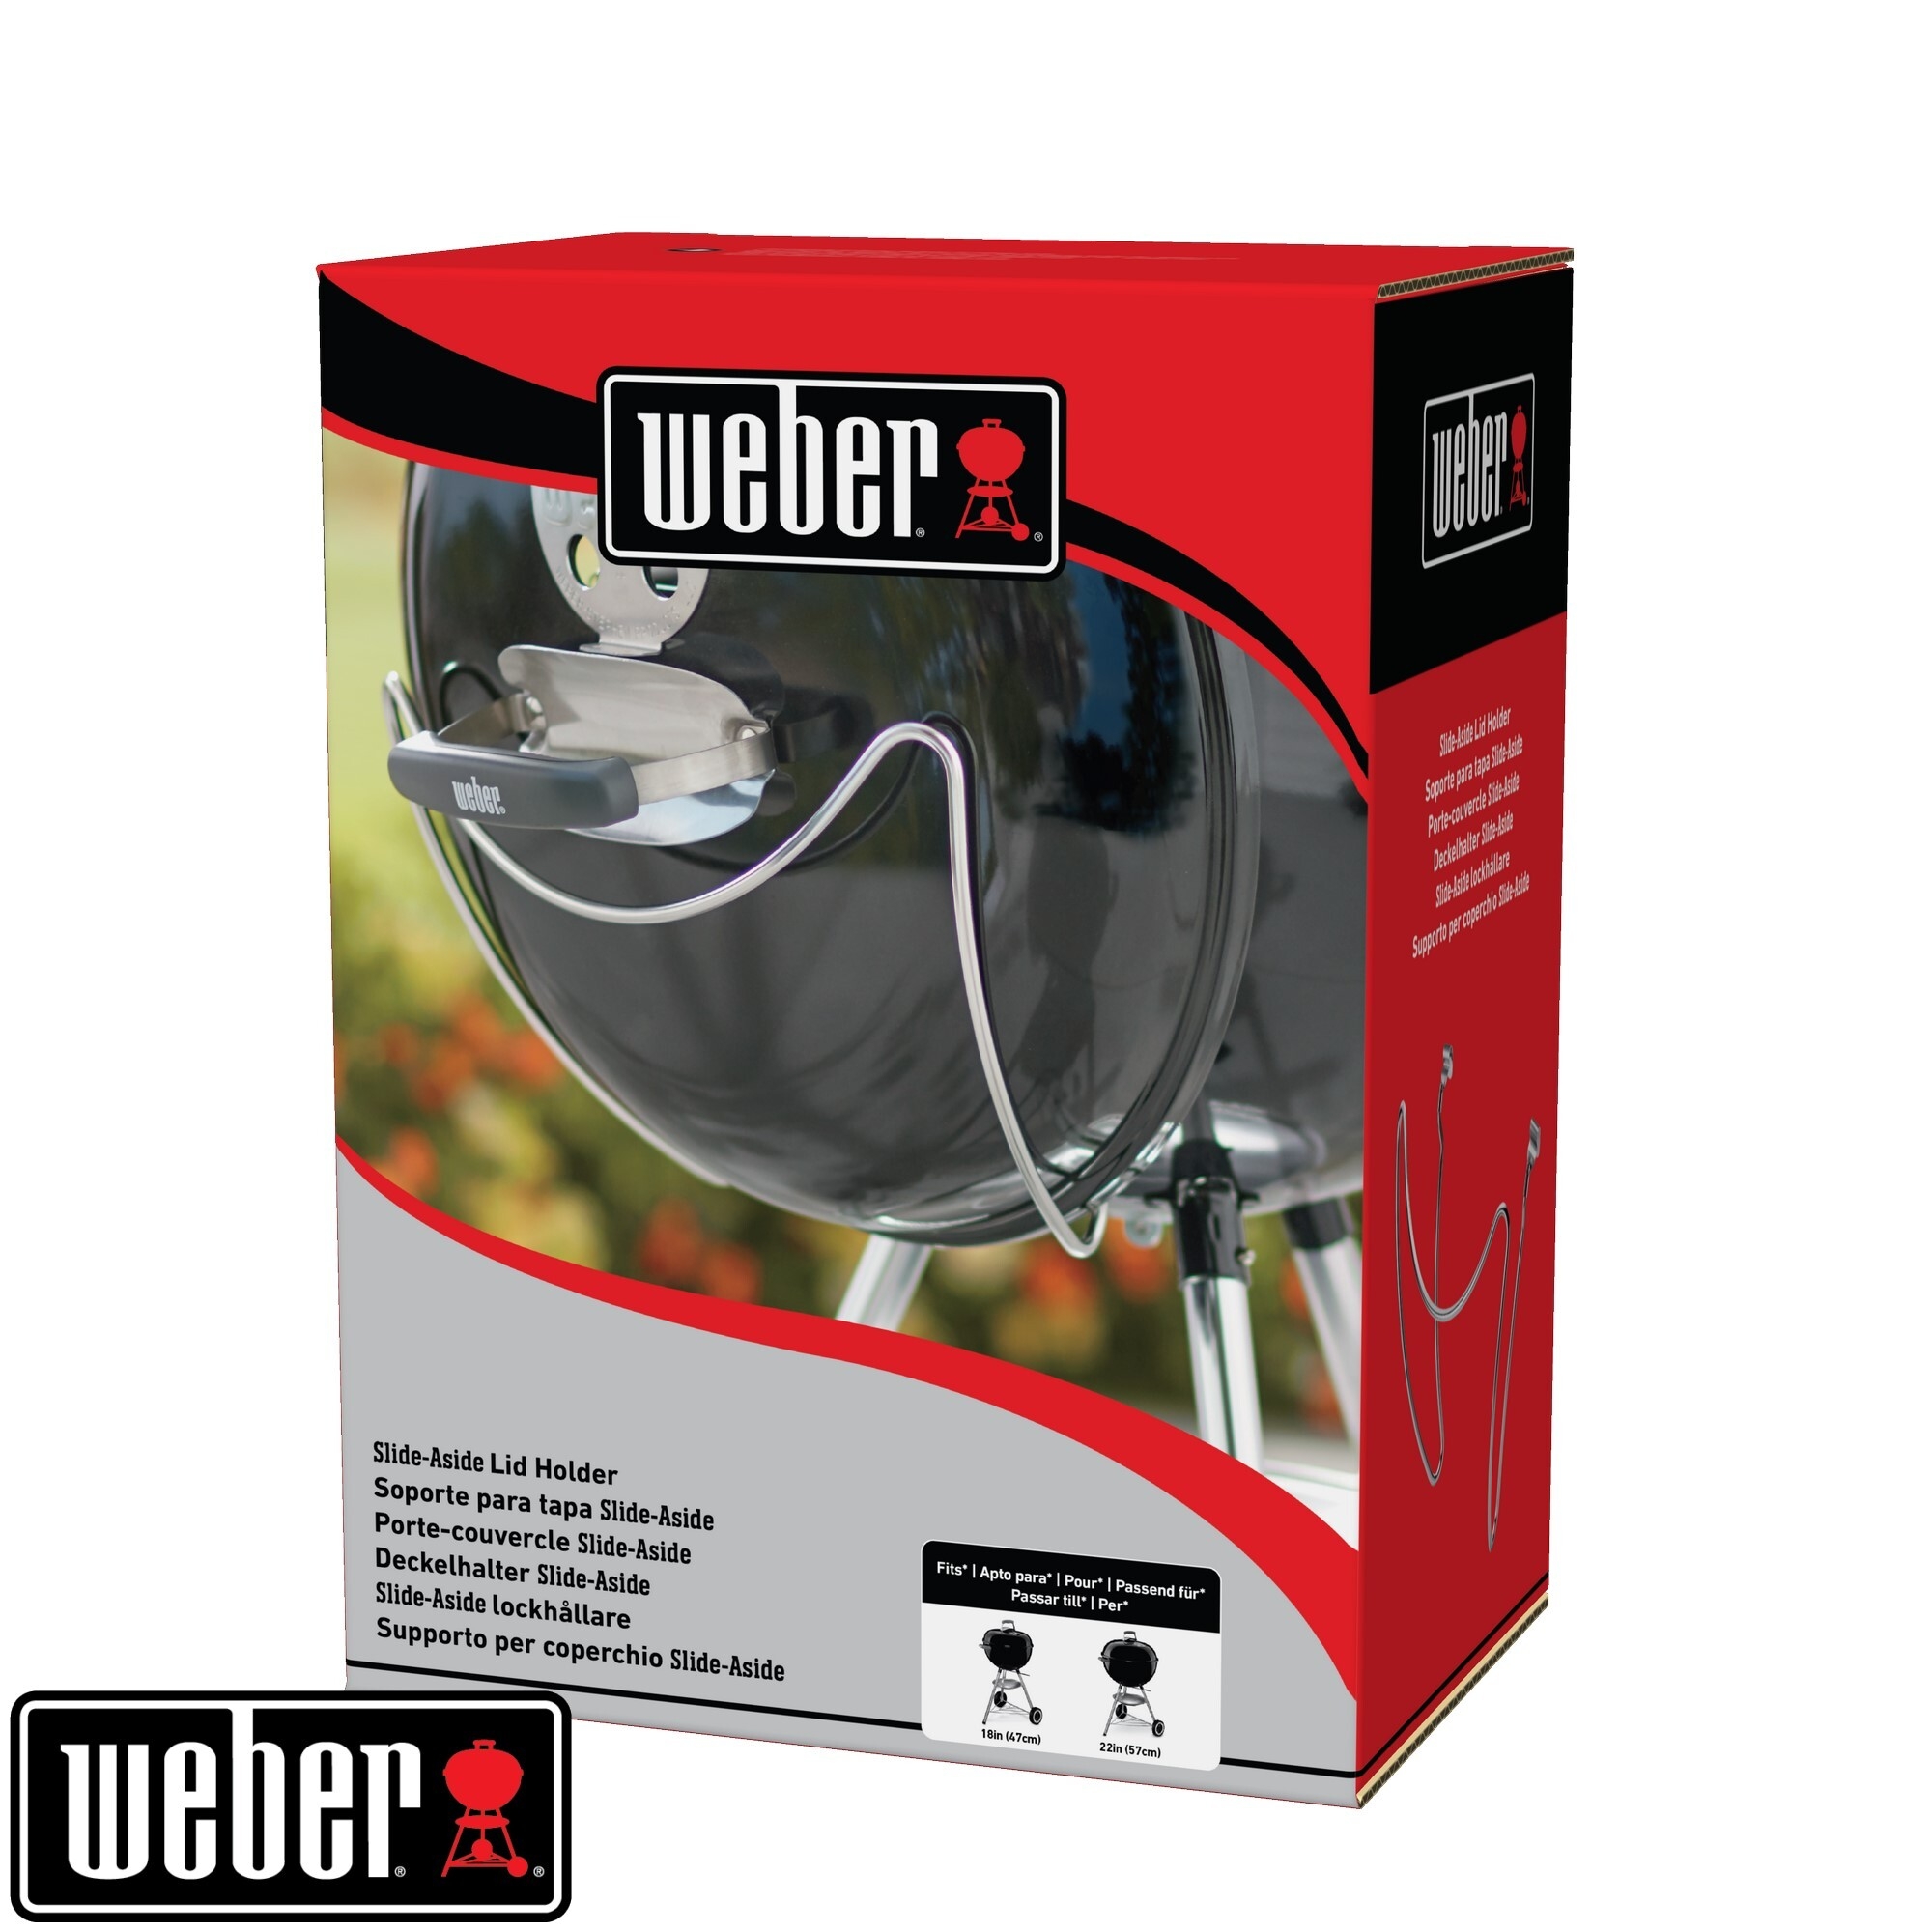 Weber Deckelhalter Slide-a-Side